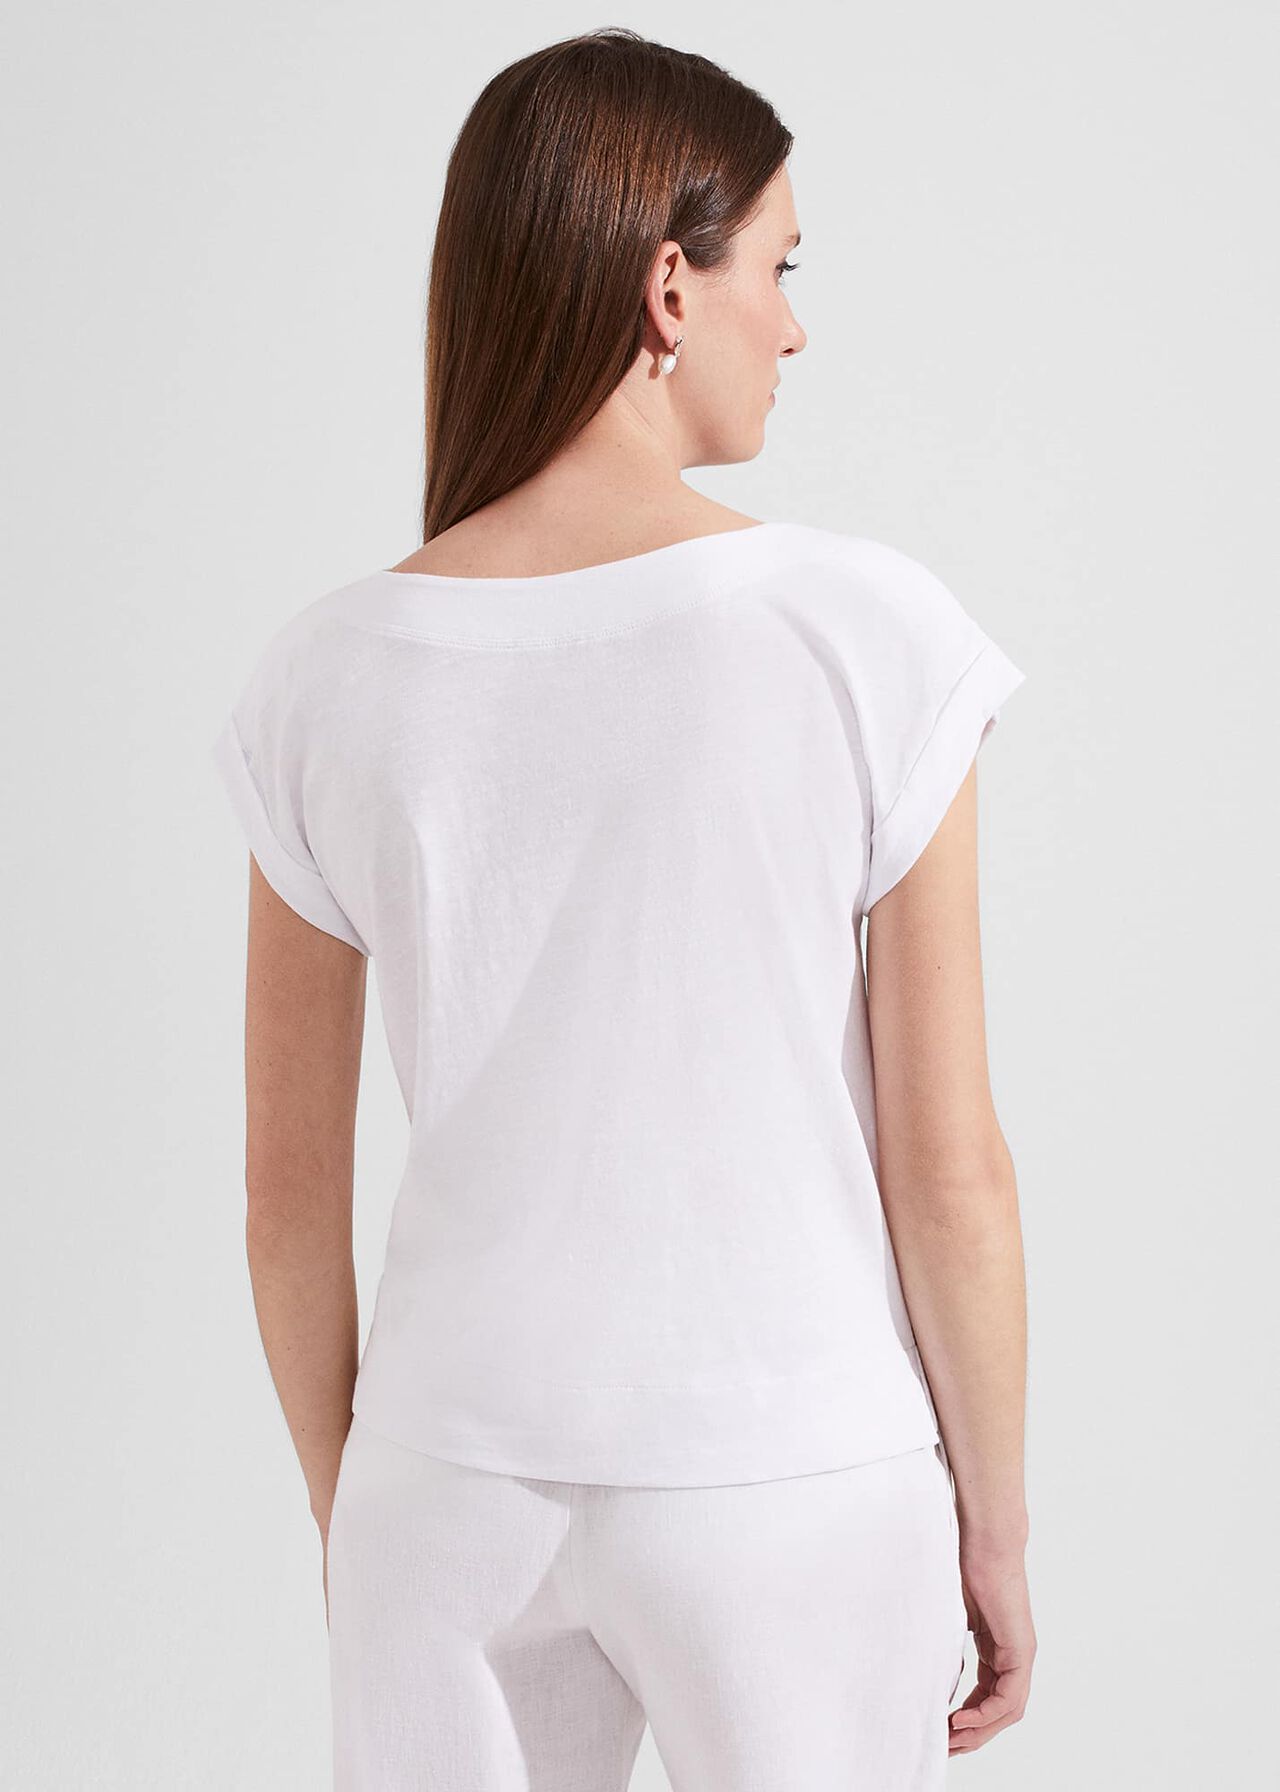 Alycia Cotton T-Shirt, White, hi-res